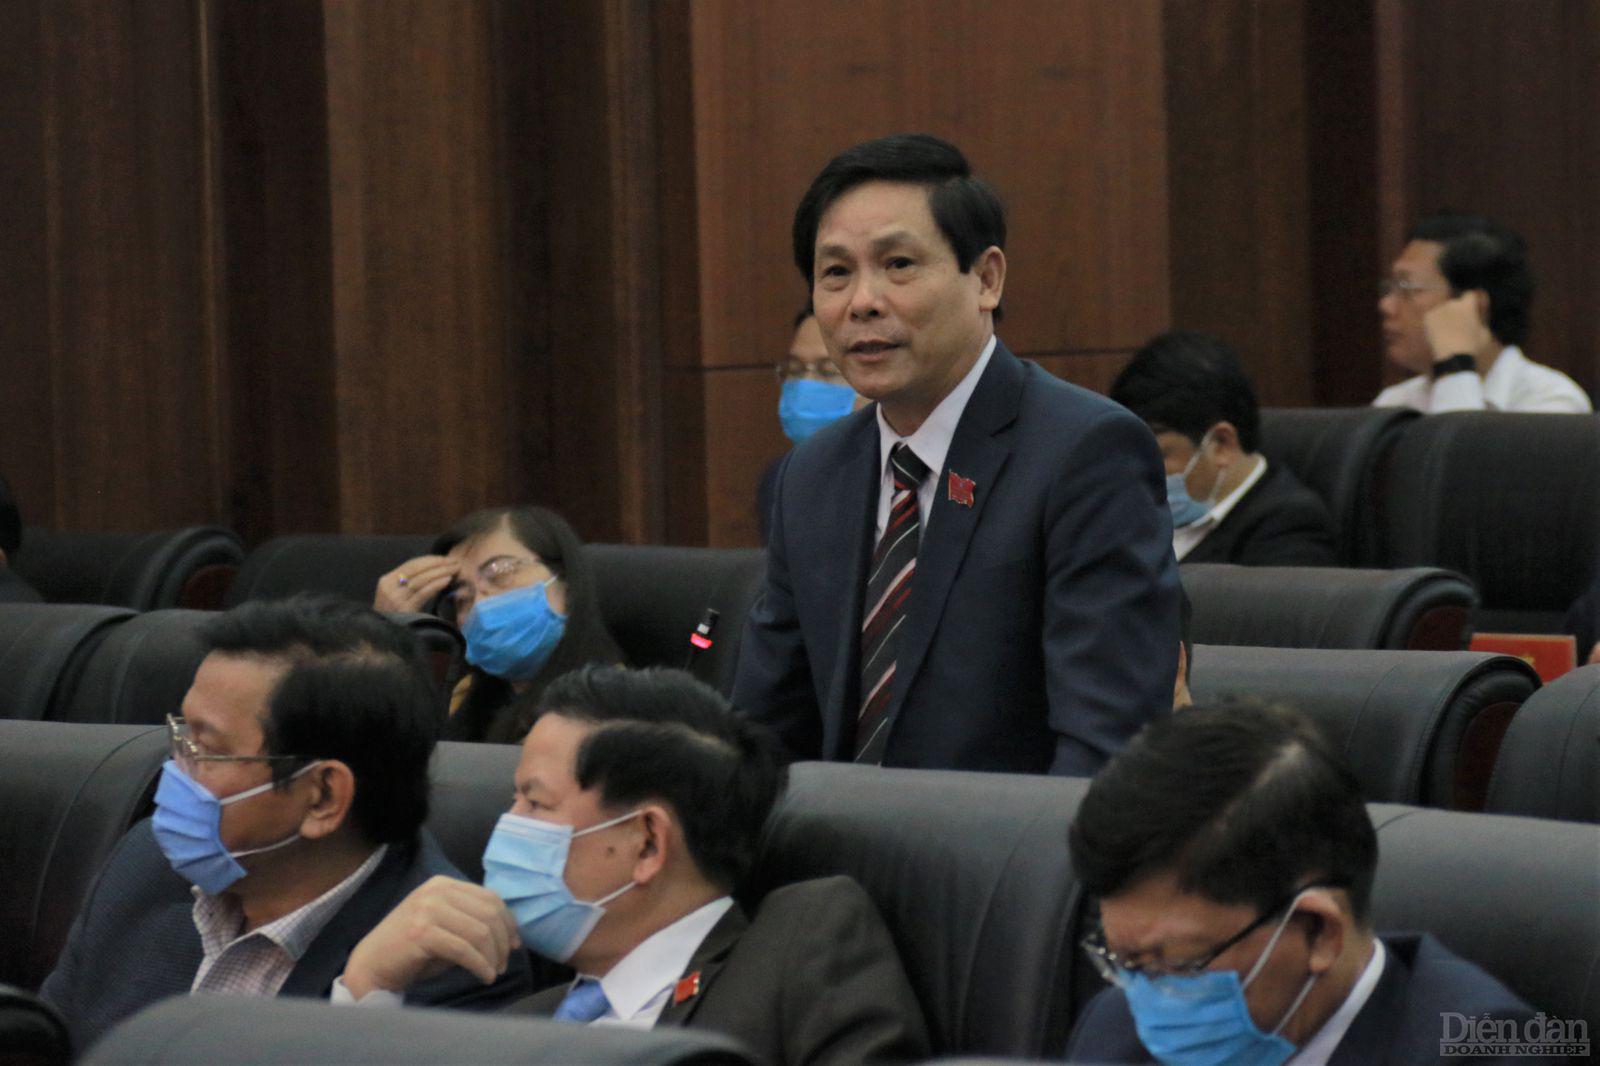 Đại biểu Huỳnh Tấn Xử cho rằng việc chất vấn hơn một nhiệm kỳ vấn đề vẫn chưa được giải quyết, dự án Làng Vân cần sớm được triển khai vì người dân địa phương đã chấp hành tốt việc di dời.